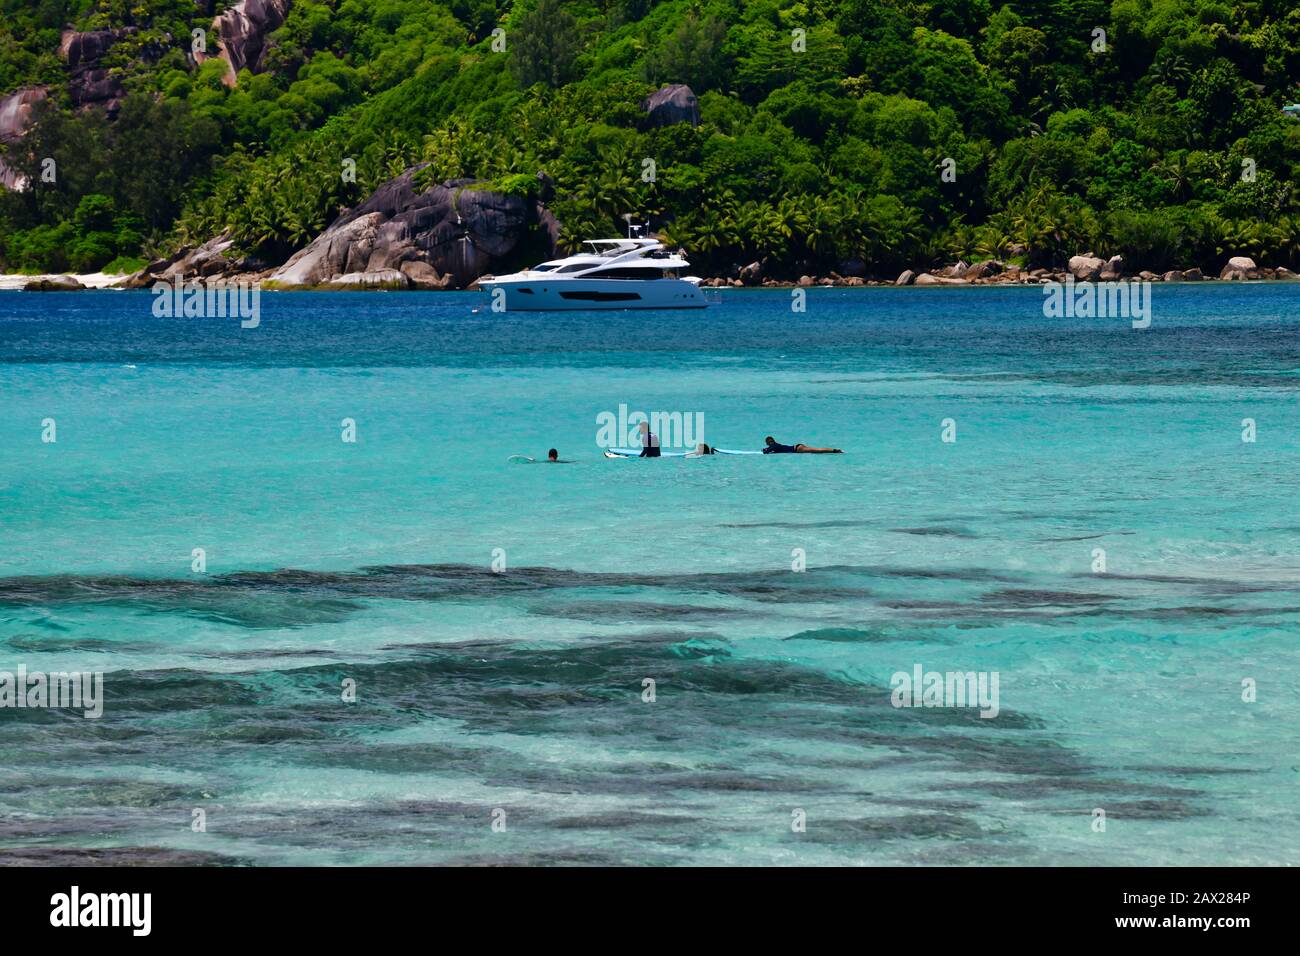 Baie Lazare, Mahe Island Seychelles - Novembre 15th 2019: Surfers in attesa di onde. Foto Stock